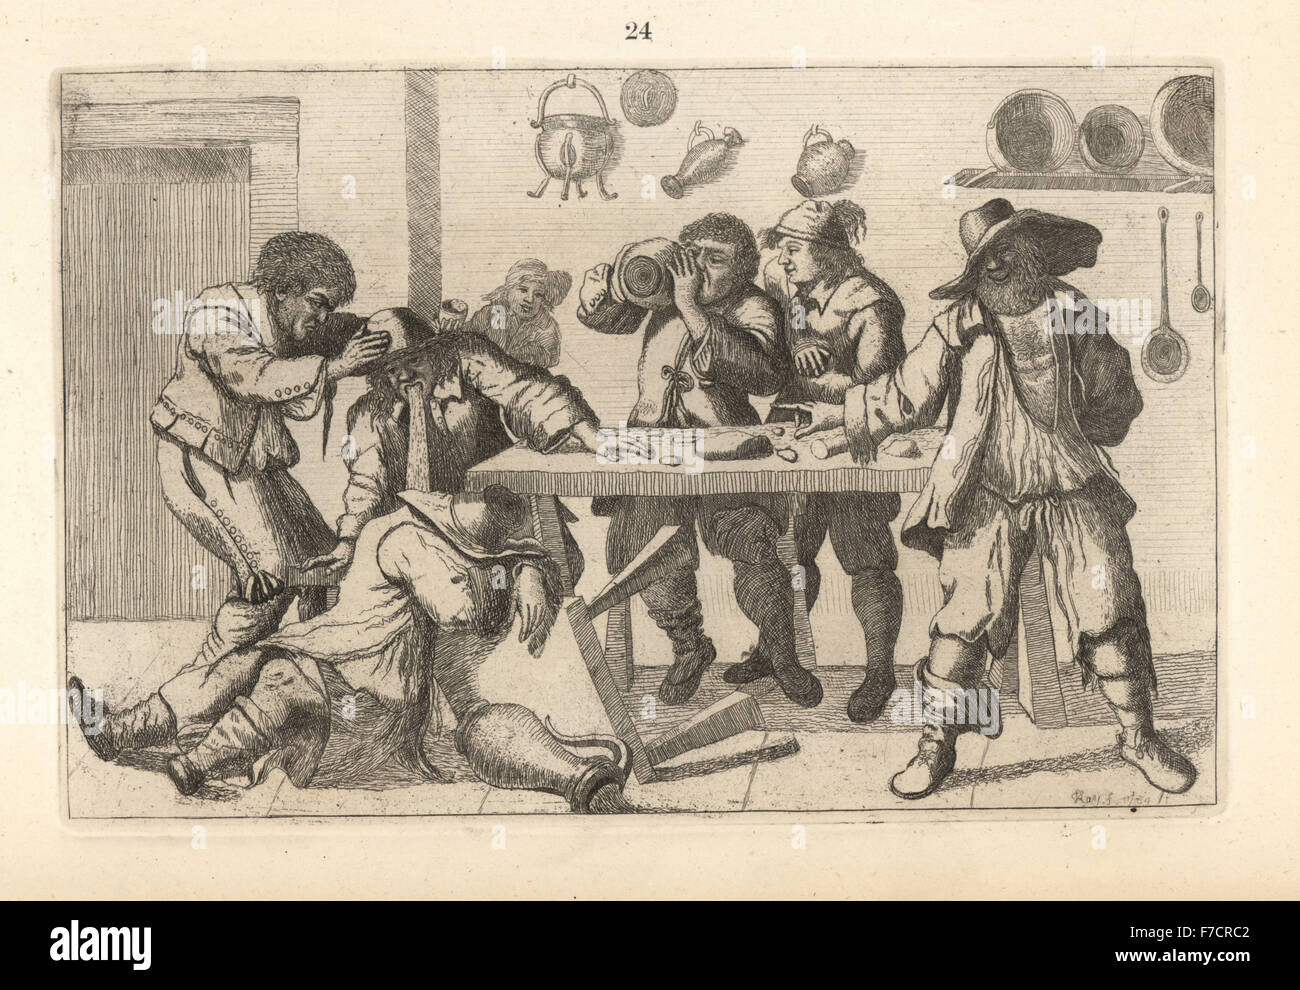 Mendigos' Fiesta, después de Adriaen van Ostade. Copperplate grabado por John Kay original a partir de una serie de retratos y caricaturas aguafuertes, Hugh Paton, Edimburgo, 1842. Foto de stock